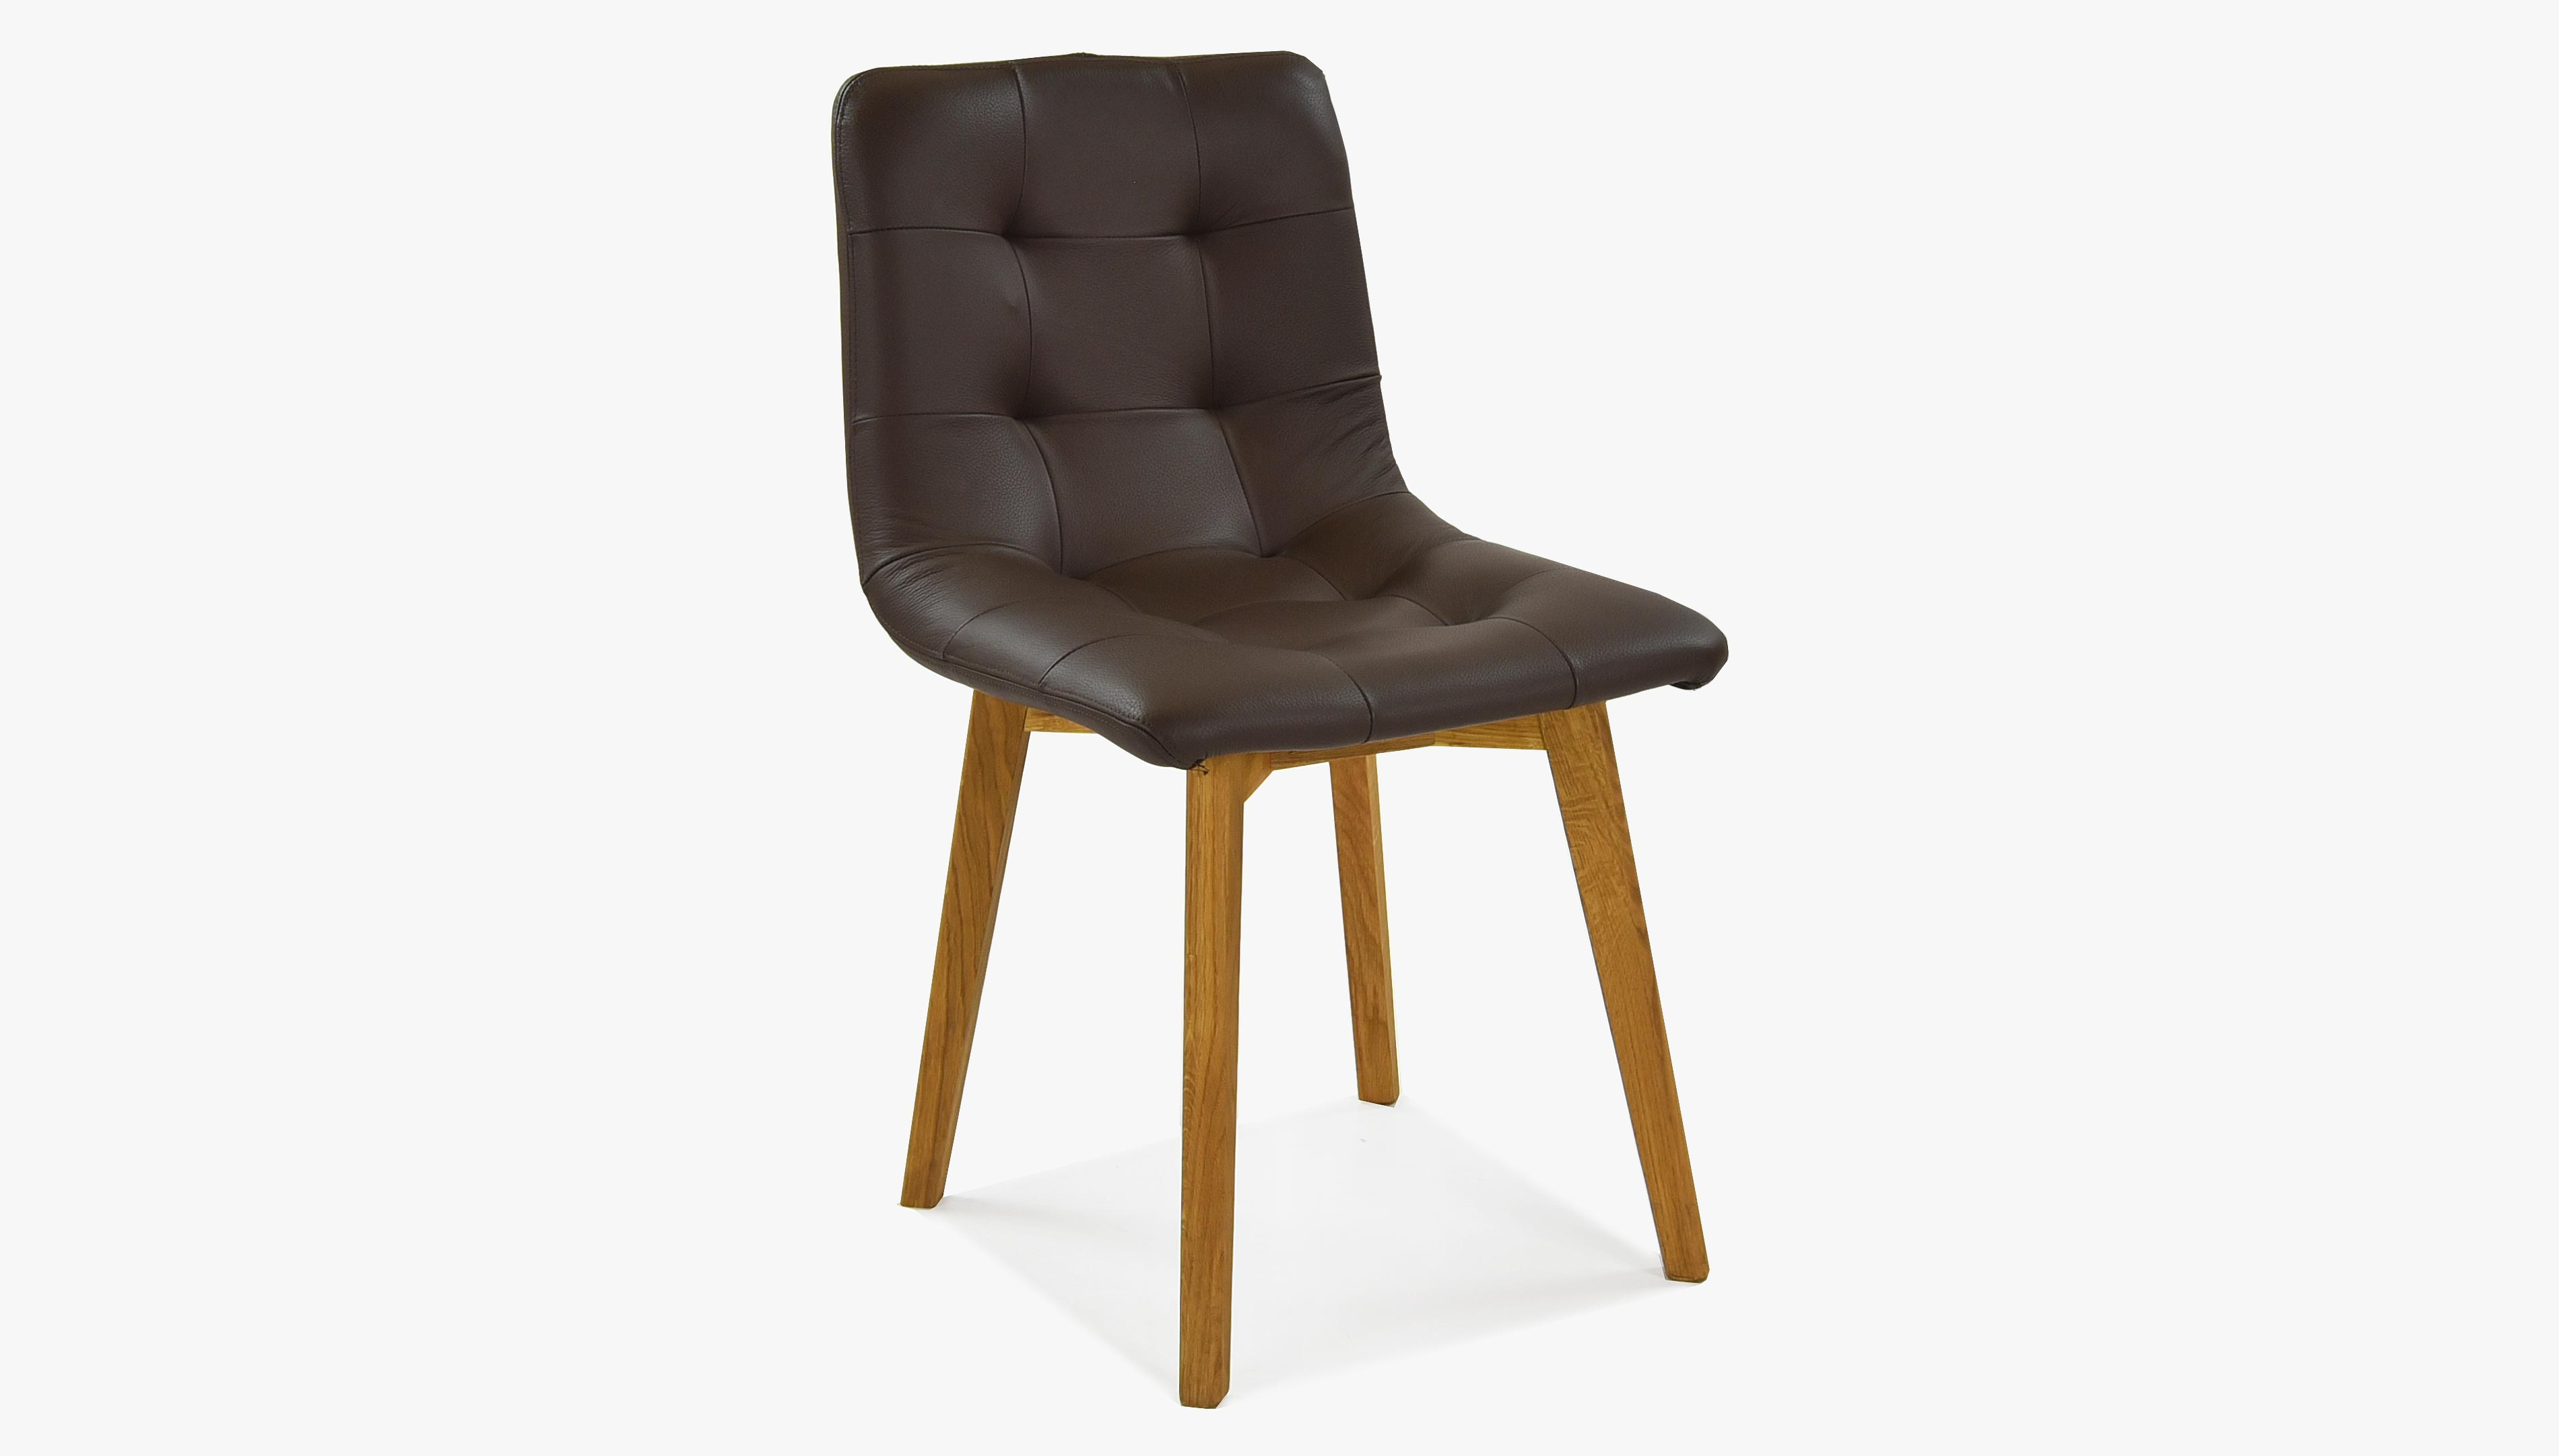 Dubová židle Kožená Leonardo - BROWN pravá kůže